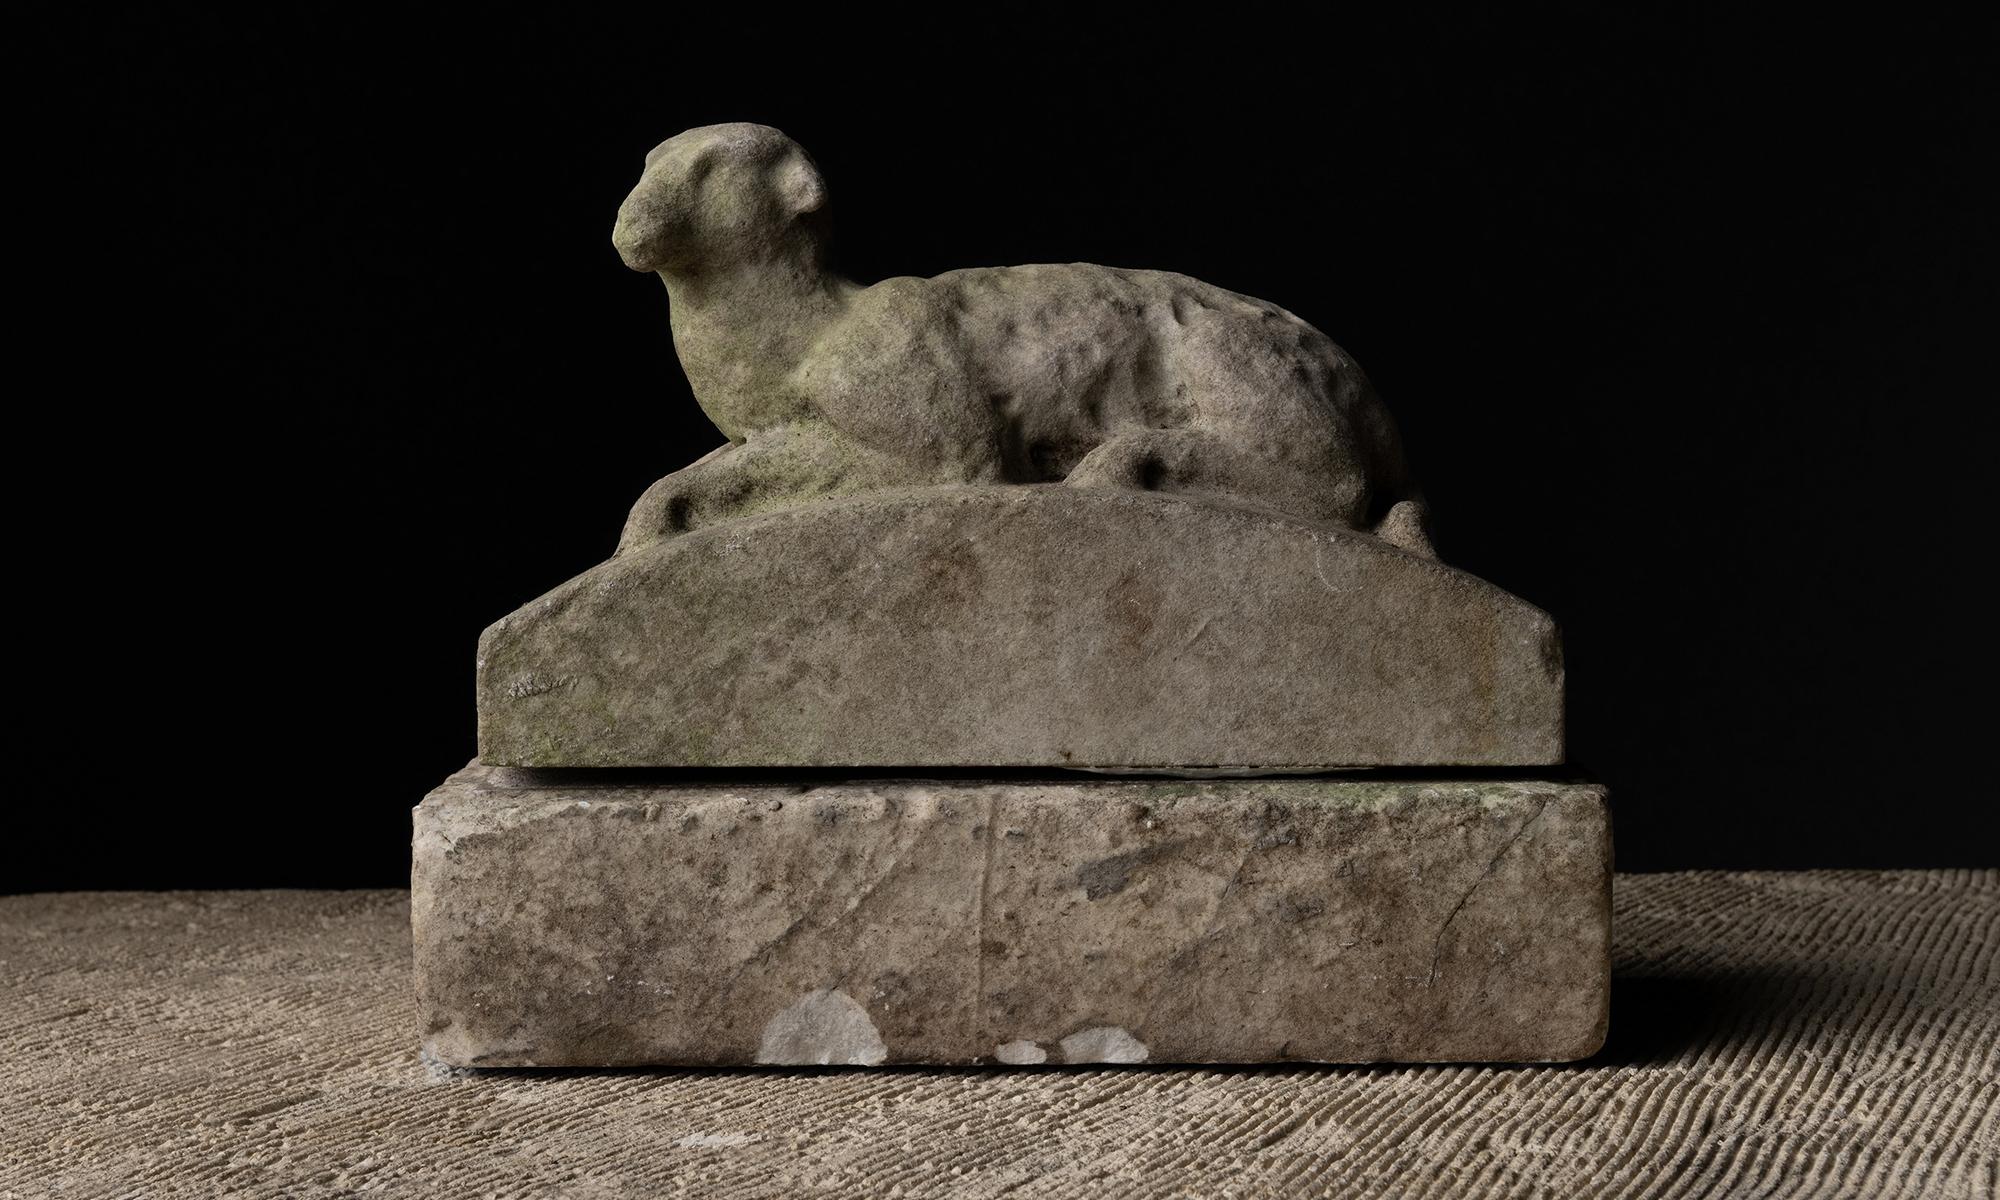 Italie vers 1840

Sculpture en marbre altéré représentant un mouton sur un piédestal.

13 